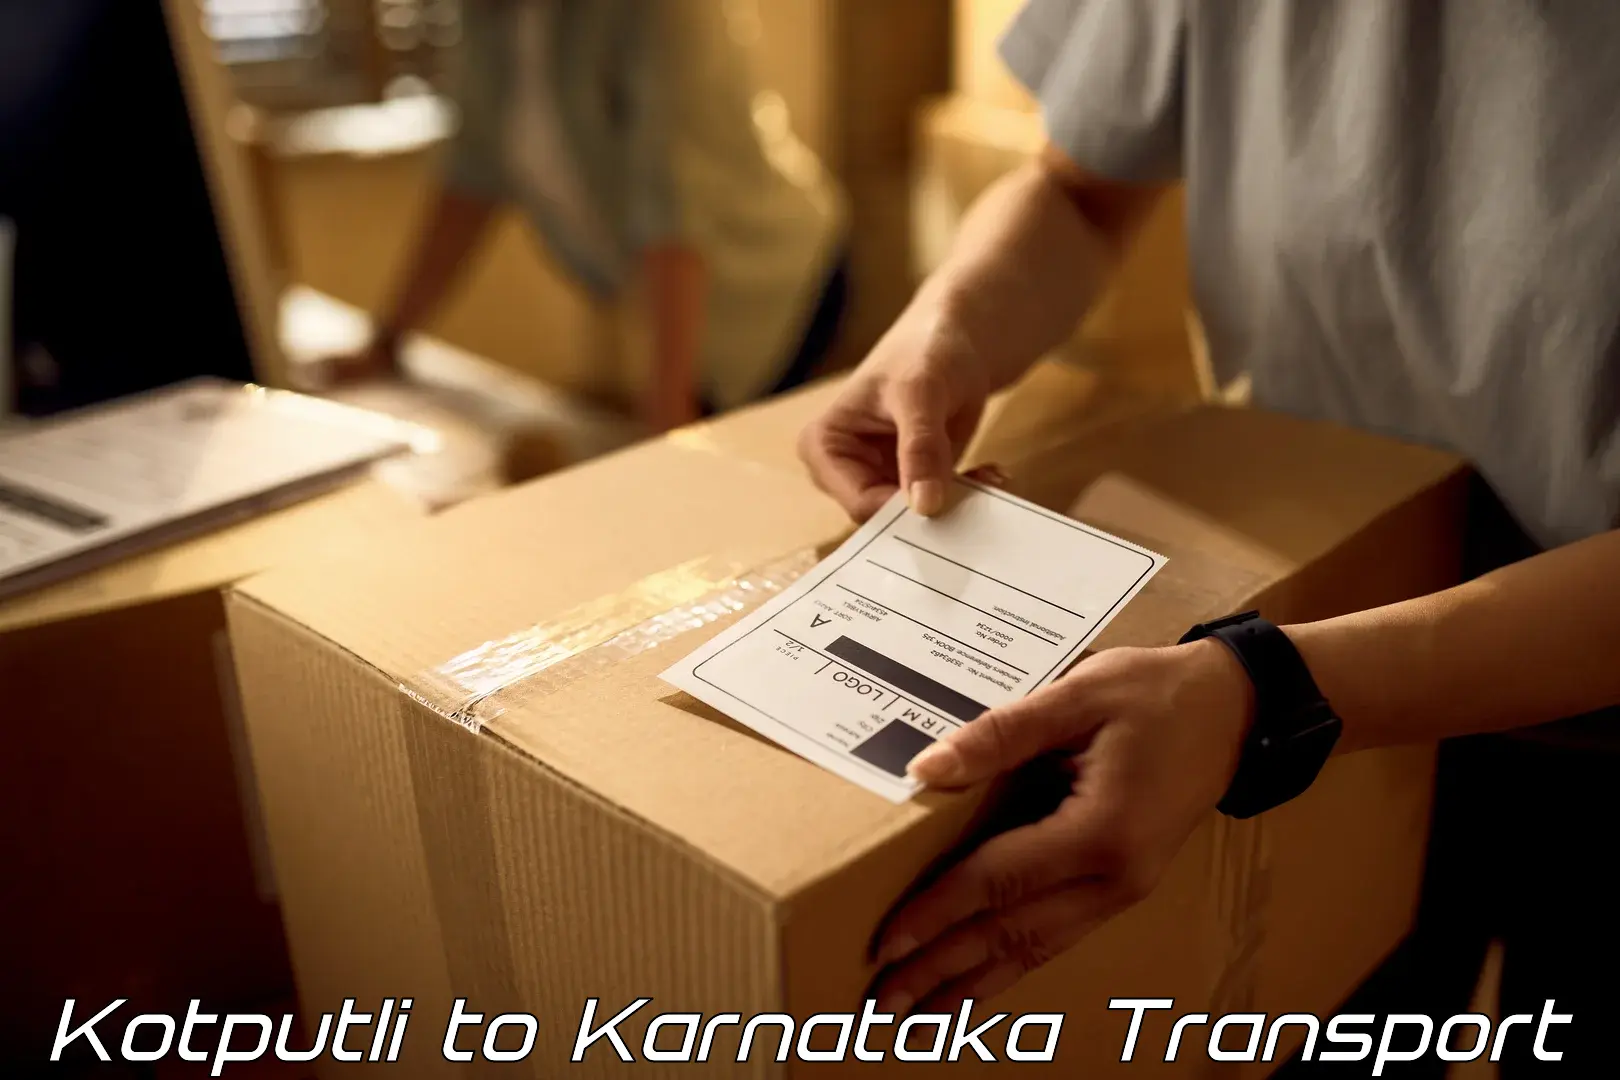 Goods delivery service Kotputli to Ramdurg